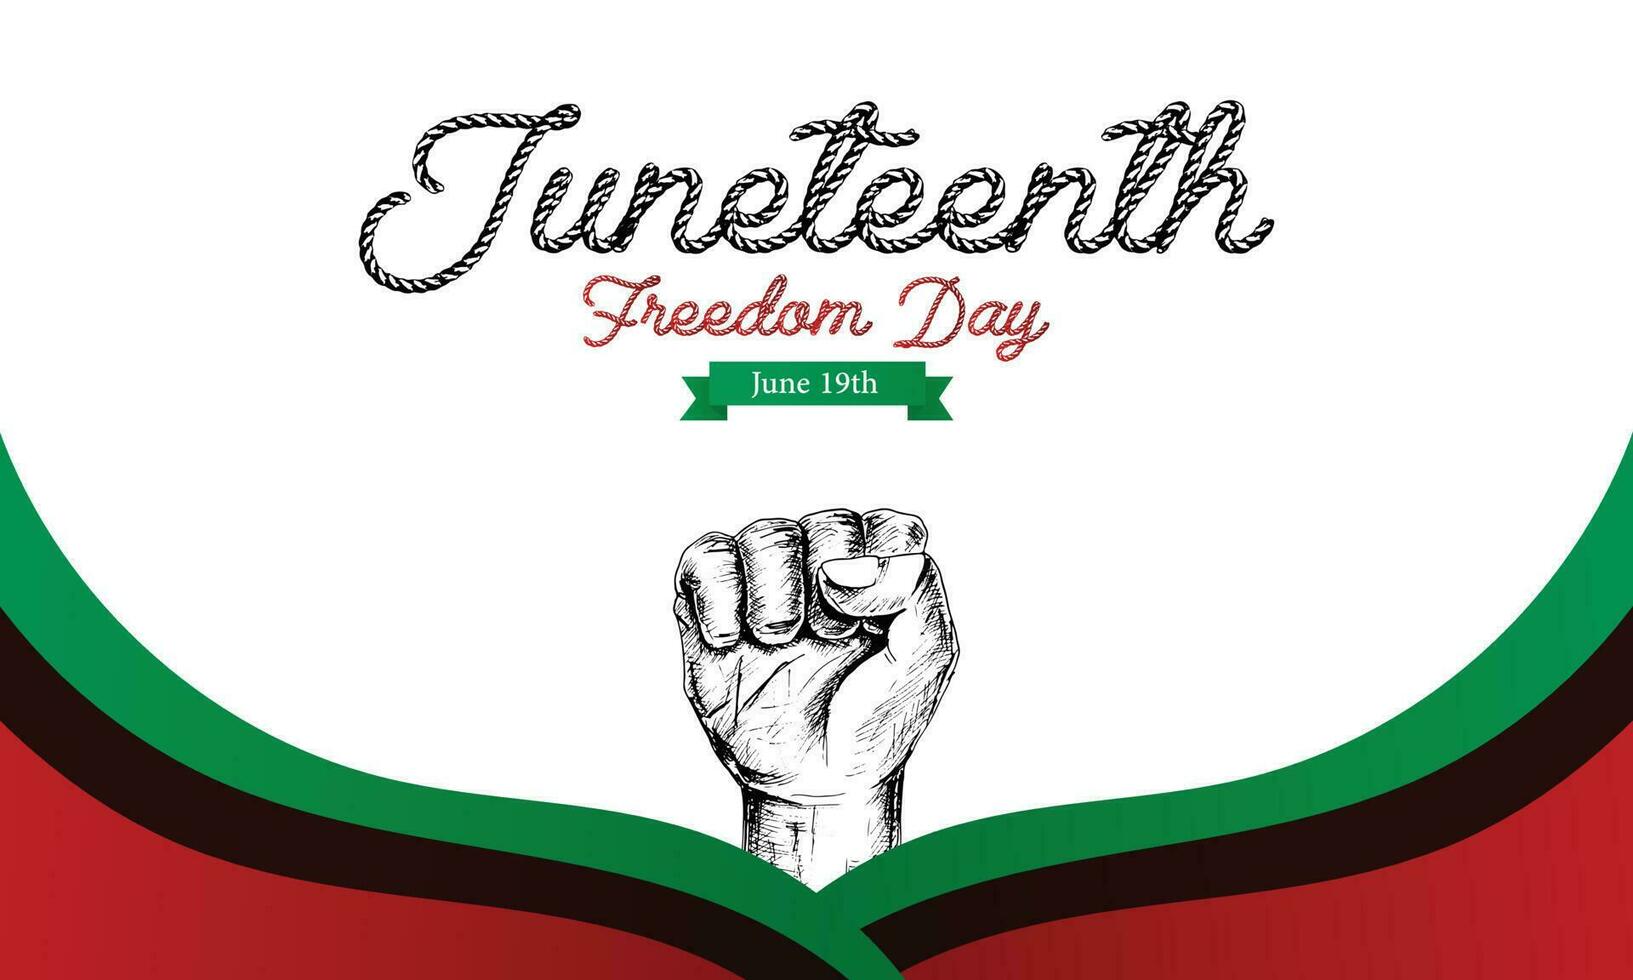 juneteenth giorno, celebrazione libertà, emancipazione giorno nel 19 giugno, afroamericano storia e eredità. vettore